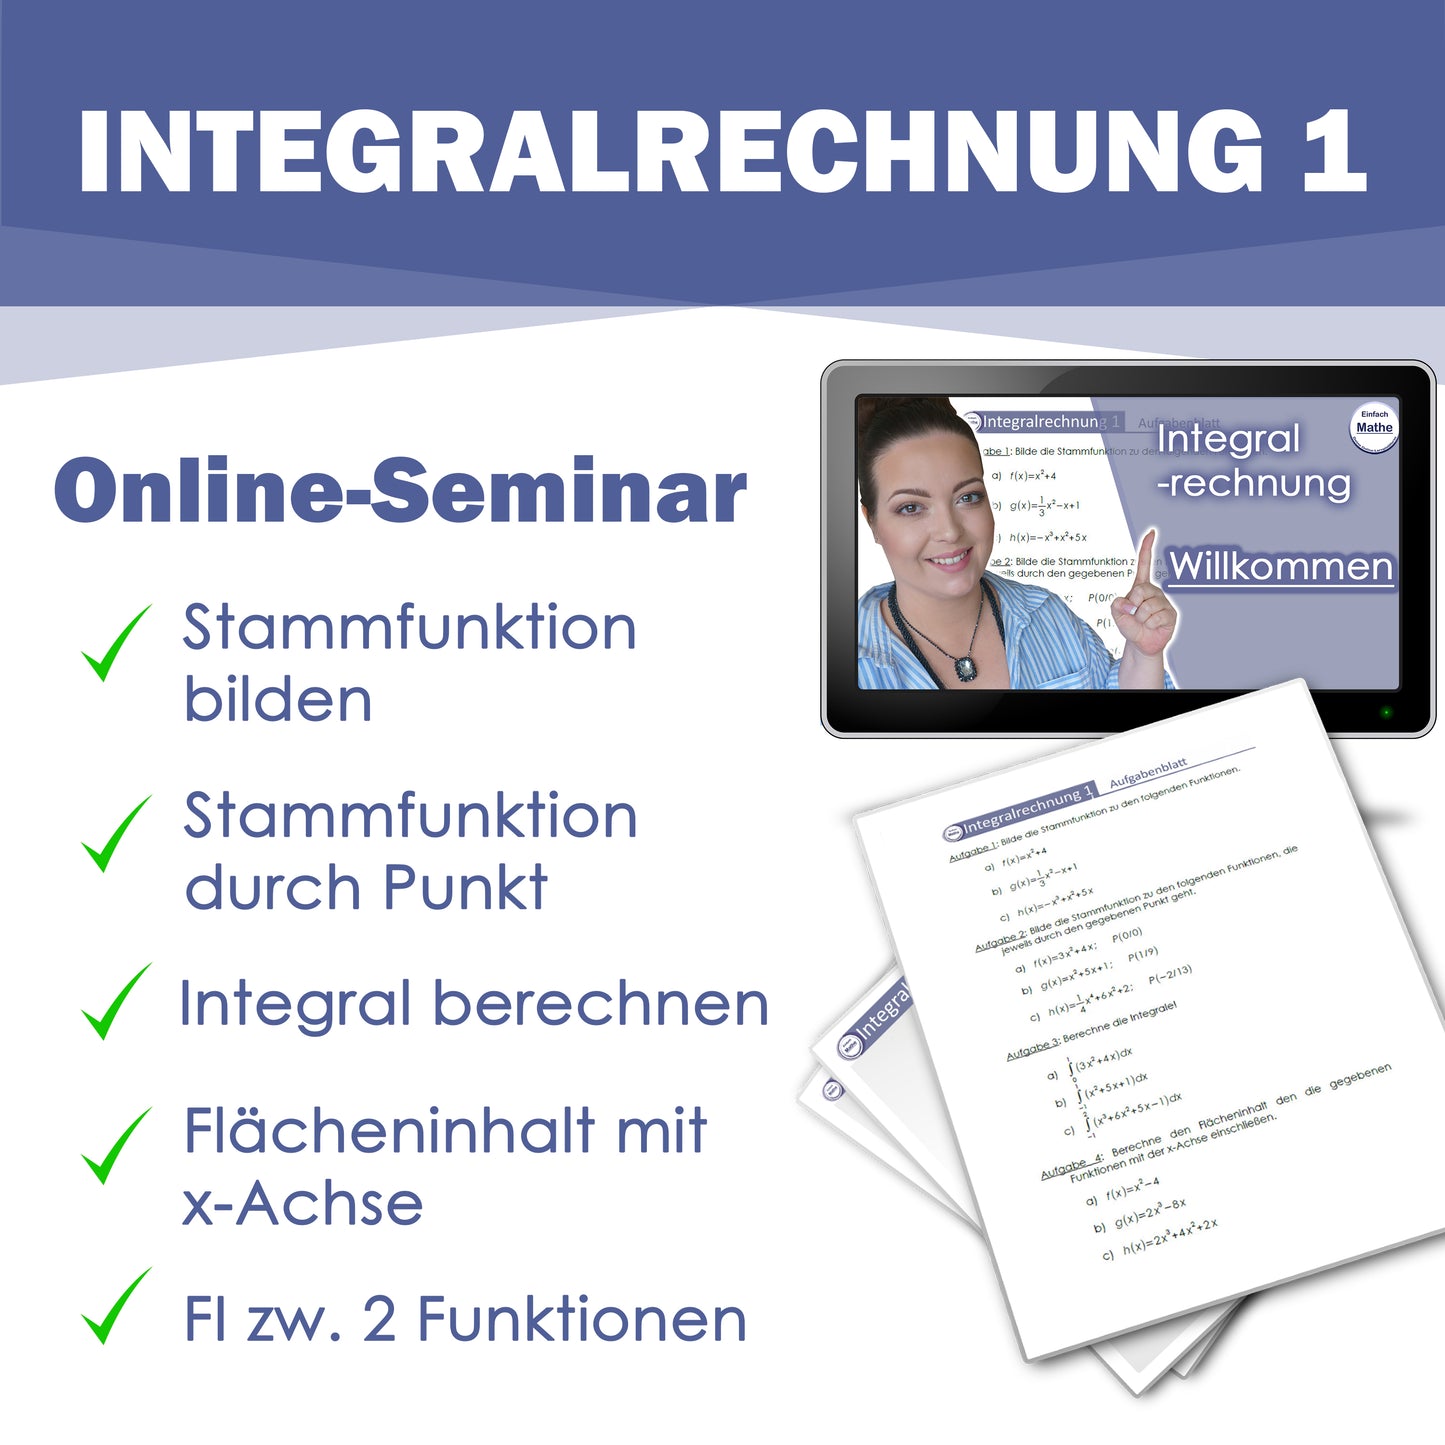 Integralrechnung 1 Online-Seminar